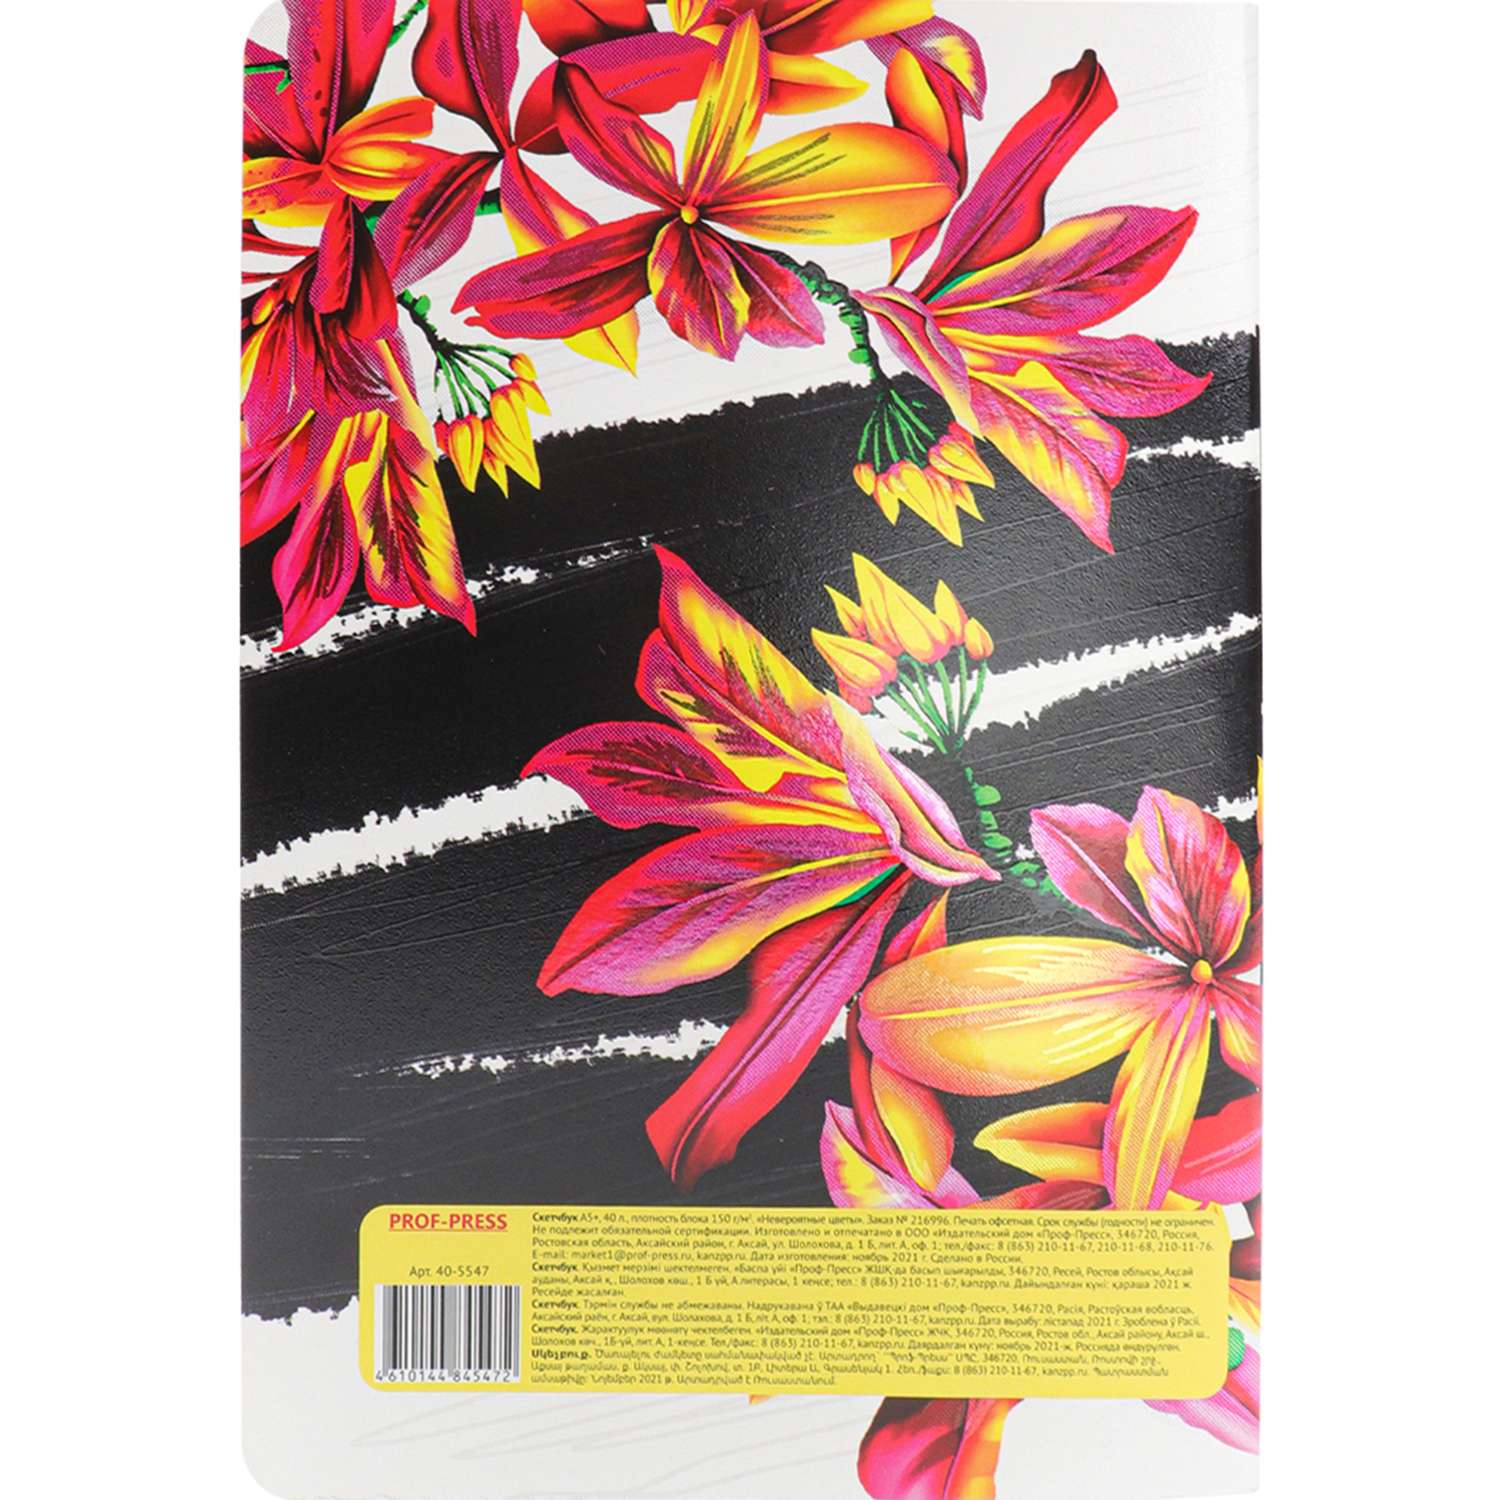 Скетчбук Prof-Press Невероятные цветы А5+ 40 листов тетрадная сшивка 150 г/м2. - фото 4